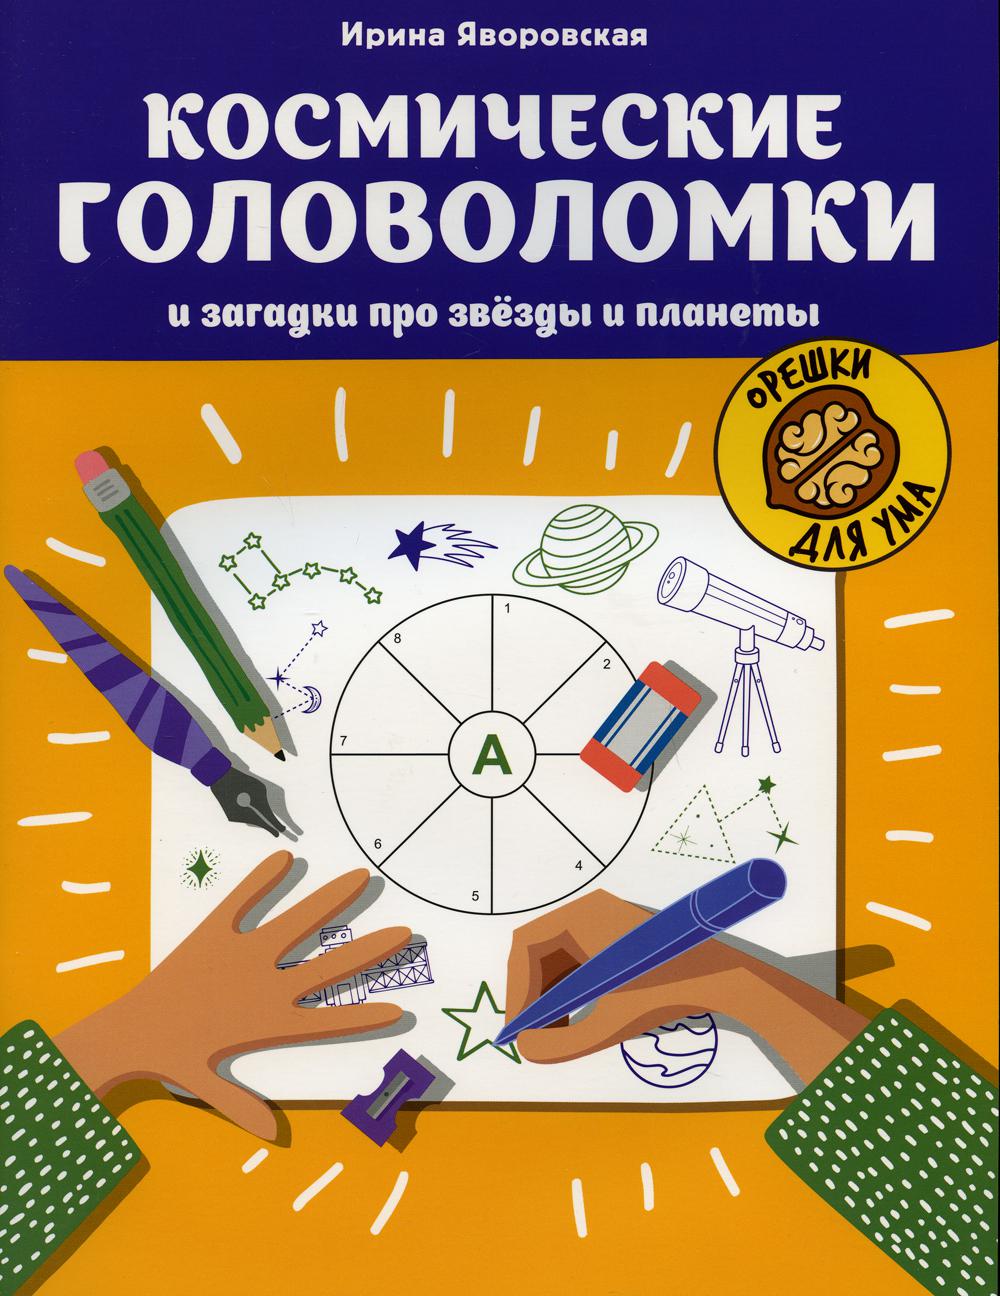 Творческие книги для детей - Рукодельнице